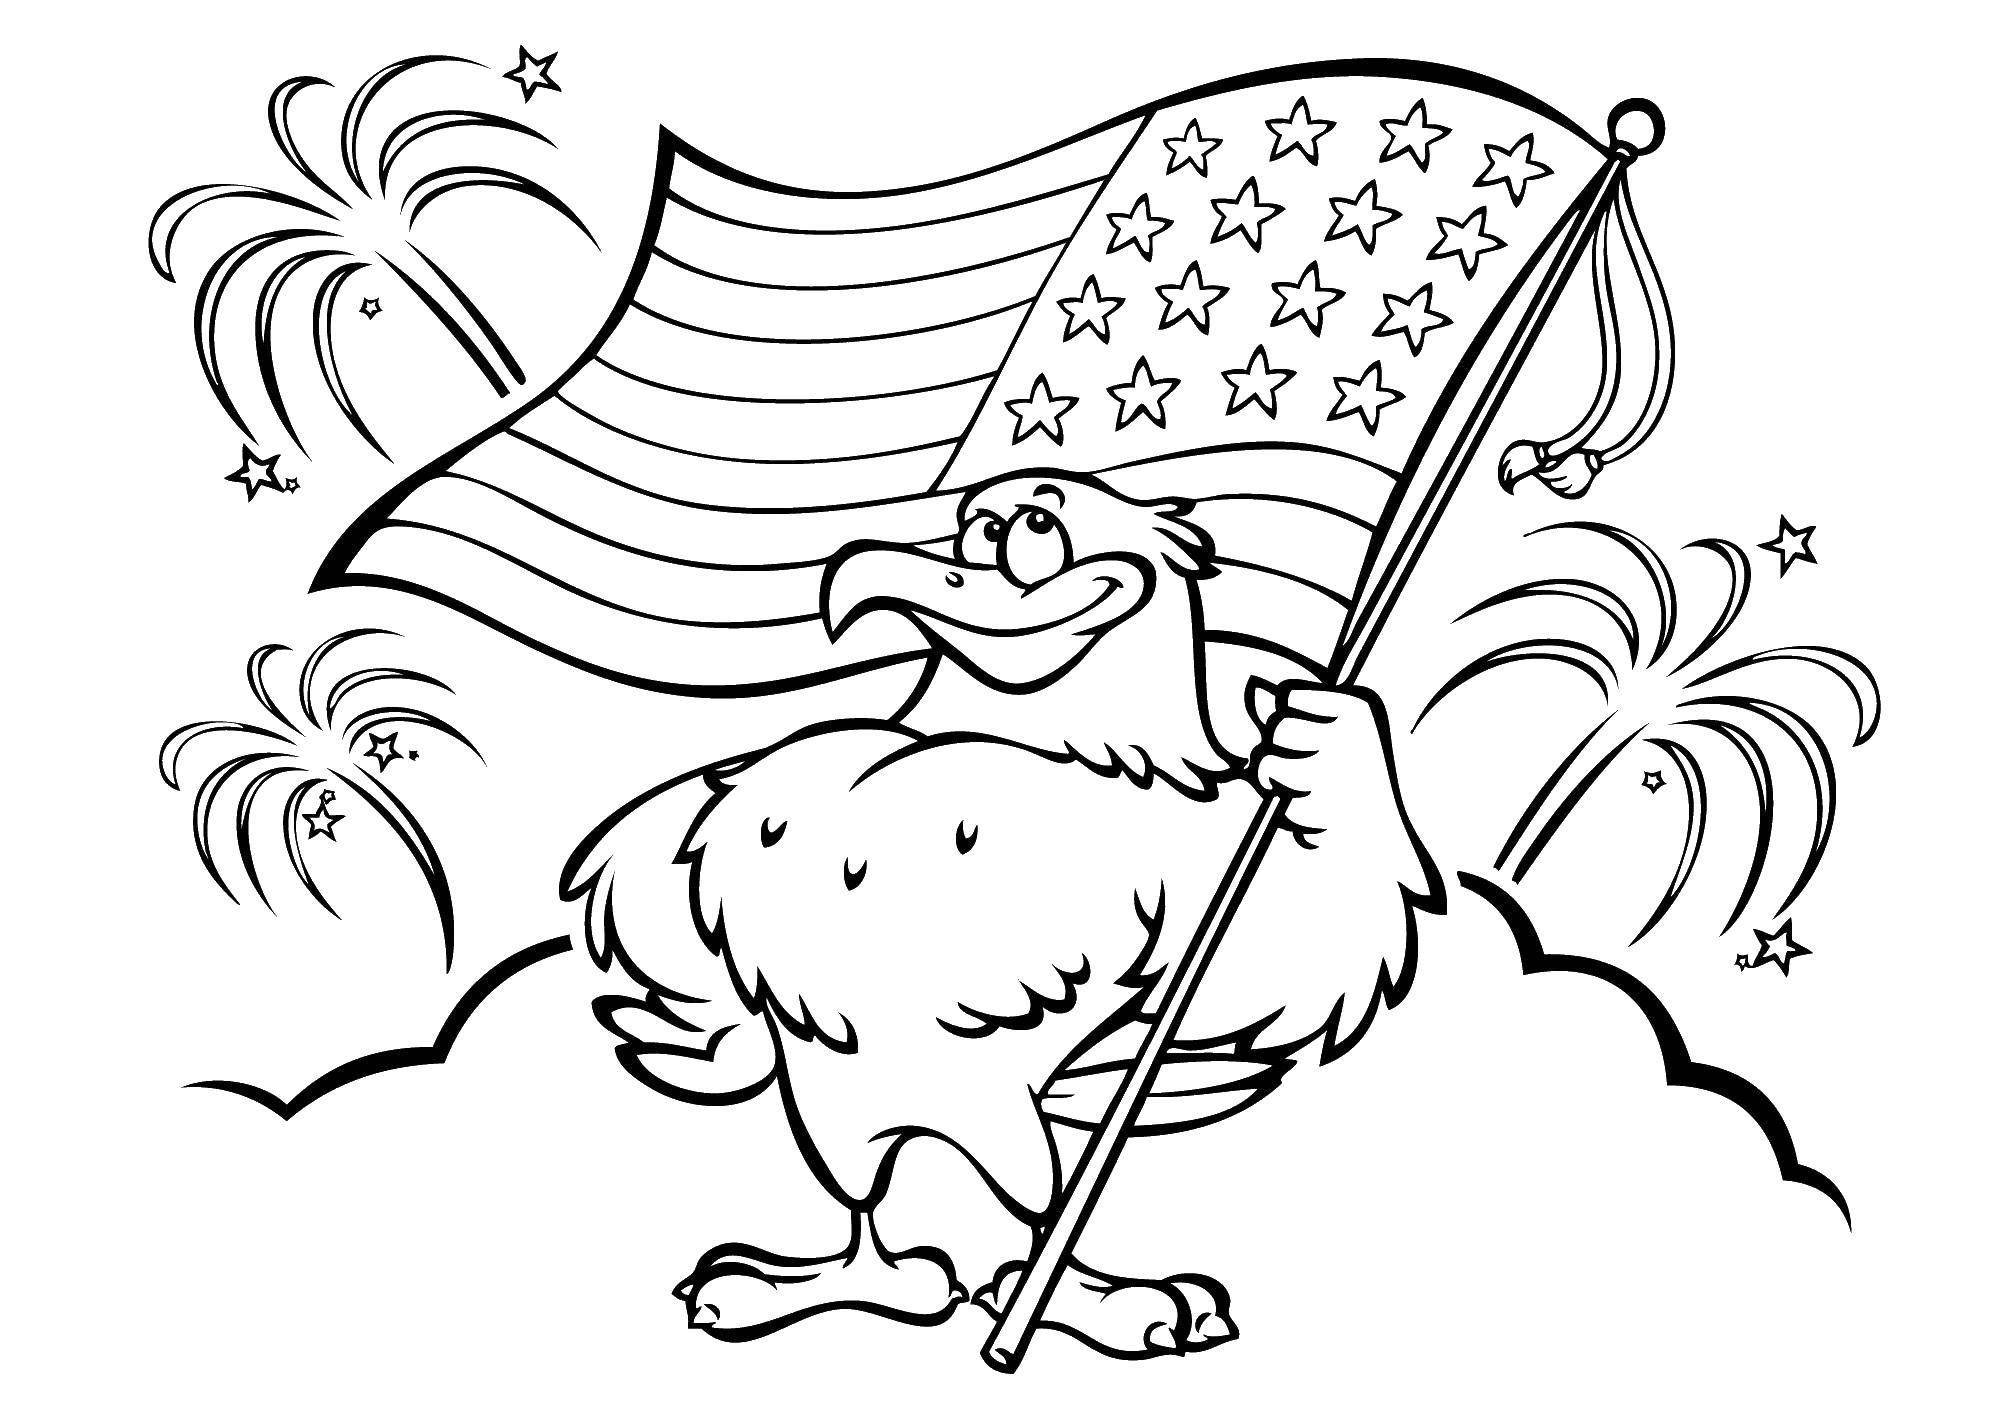 Название: Раскраска Орел с флагом америки. Категория: США. Теги: США, Америка, флаг.